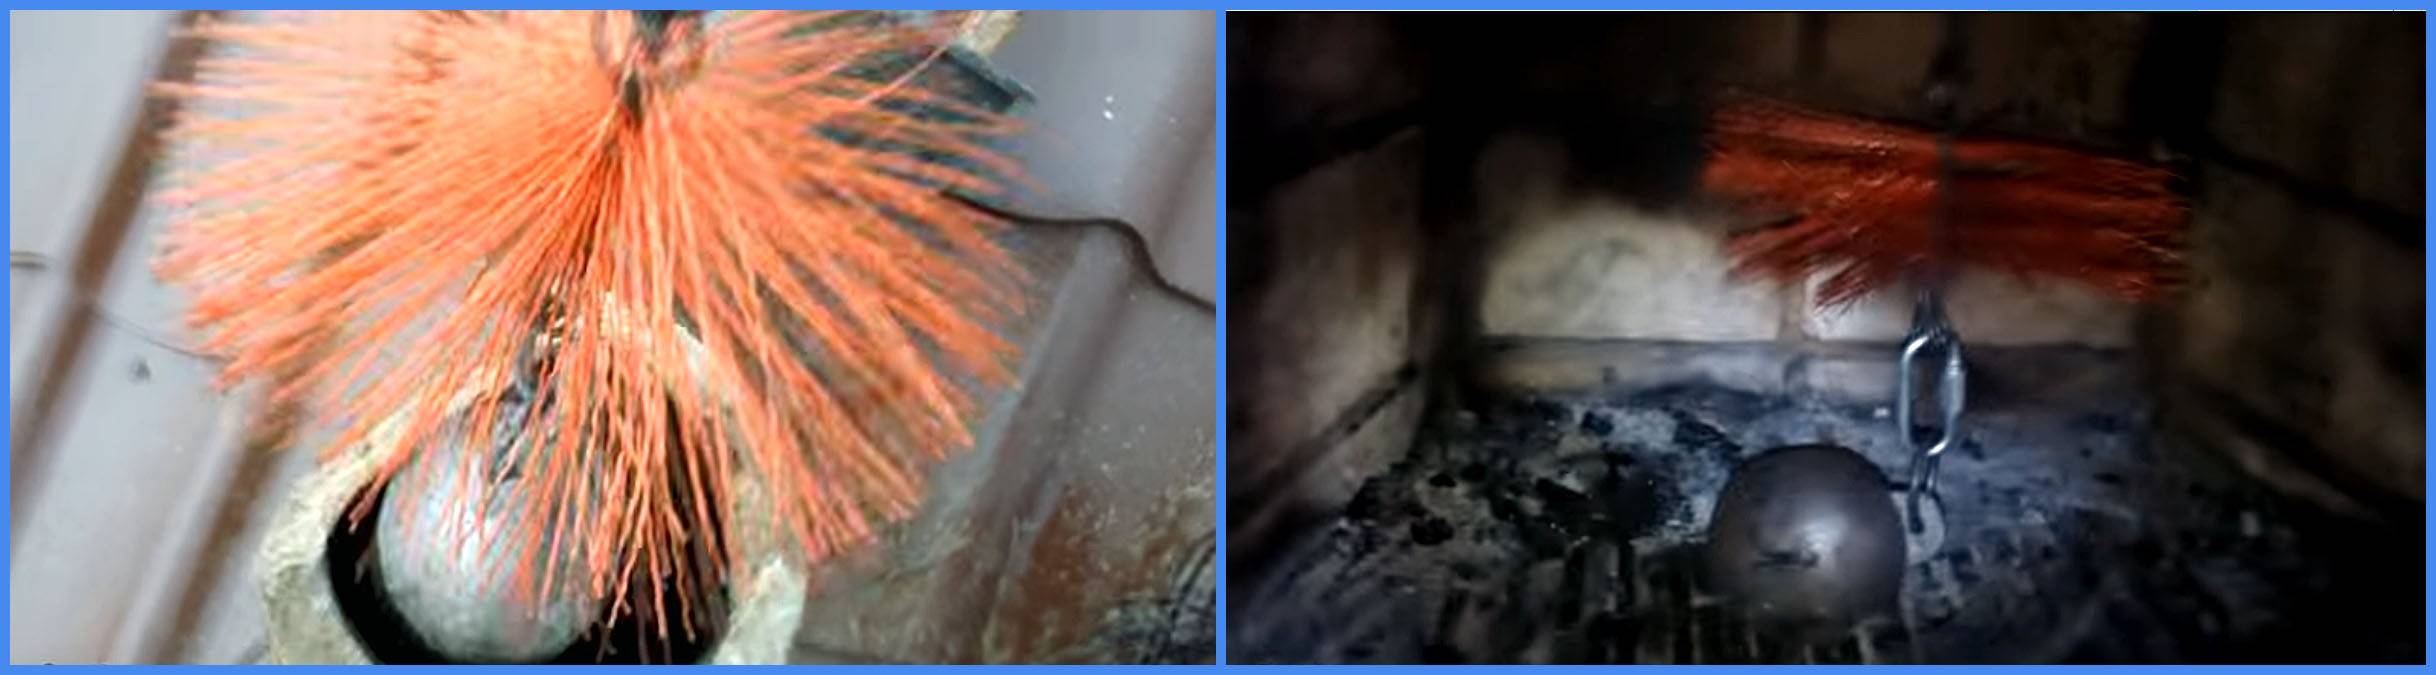 Как прочистить трубу дымоход в частном доме: механическая и химическая чистка+народные способы